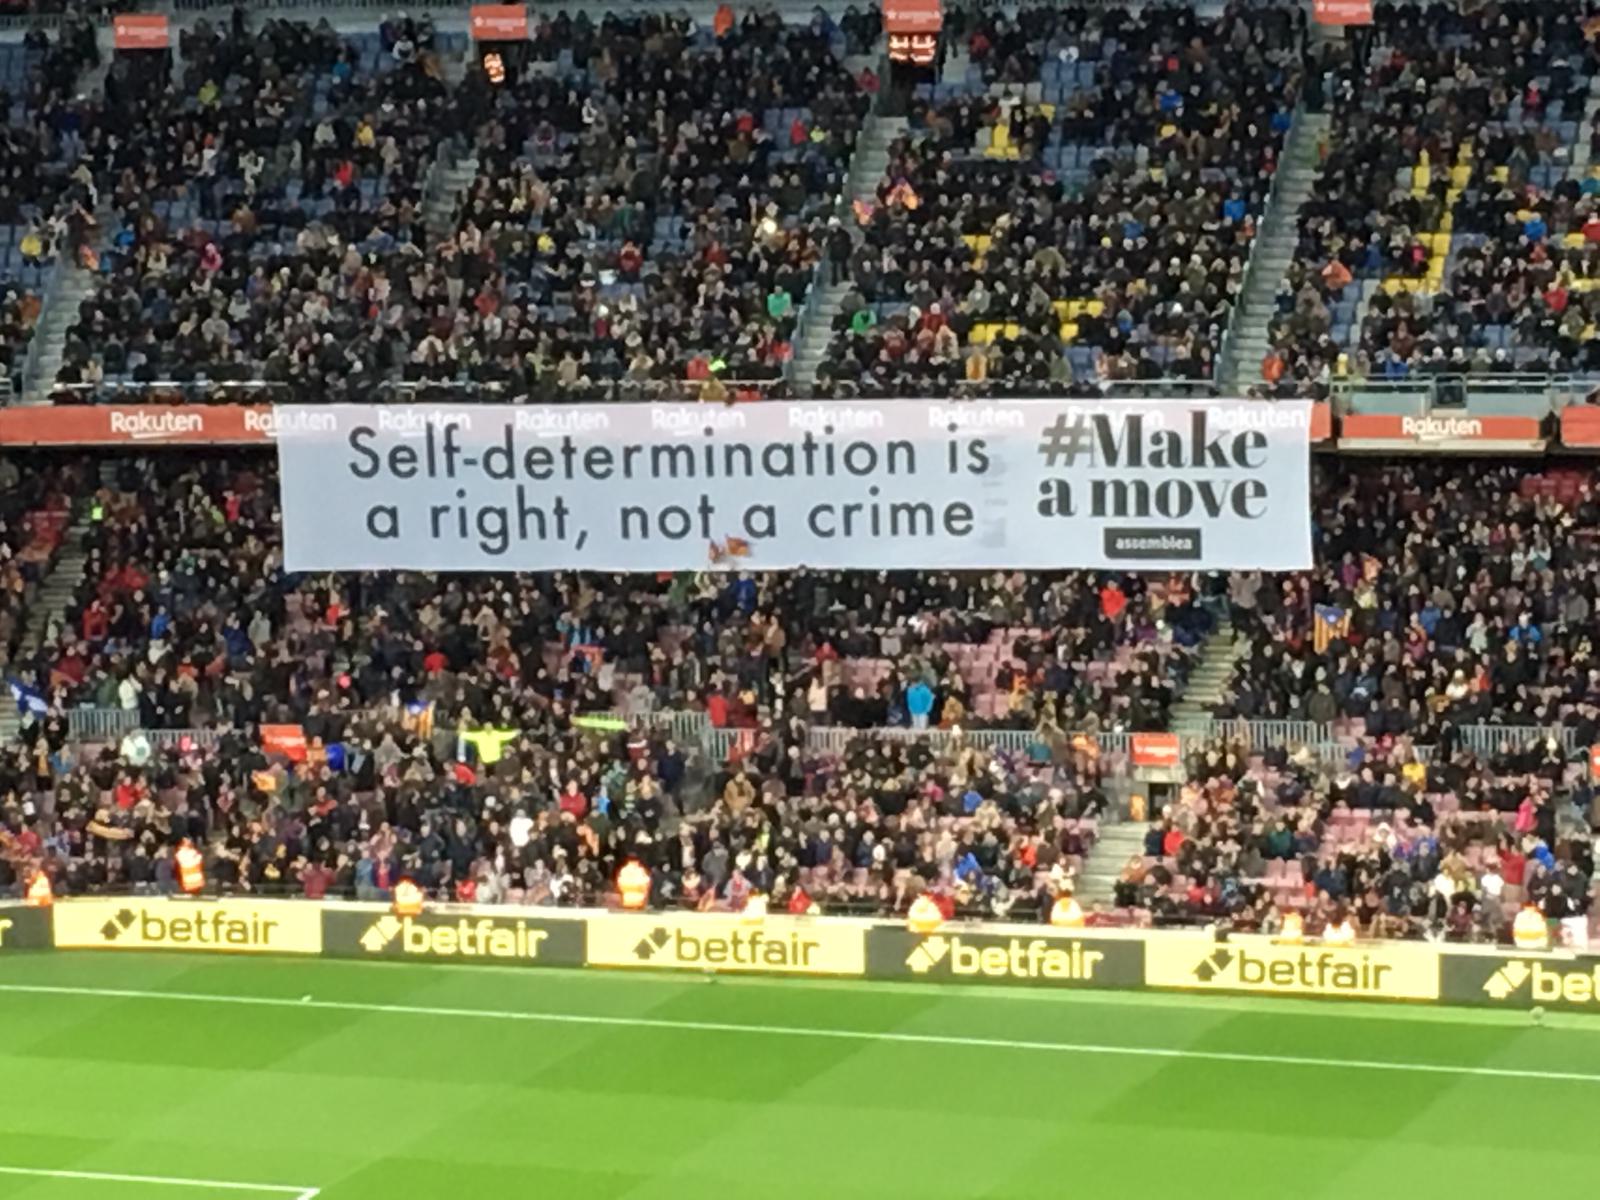 "L'autodeterminació és un dret, no un delicte": la pancarta reivindicativa del Camp Nou